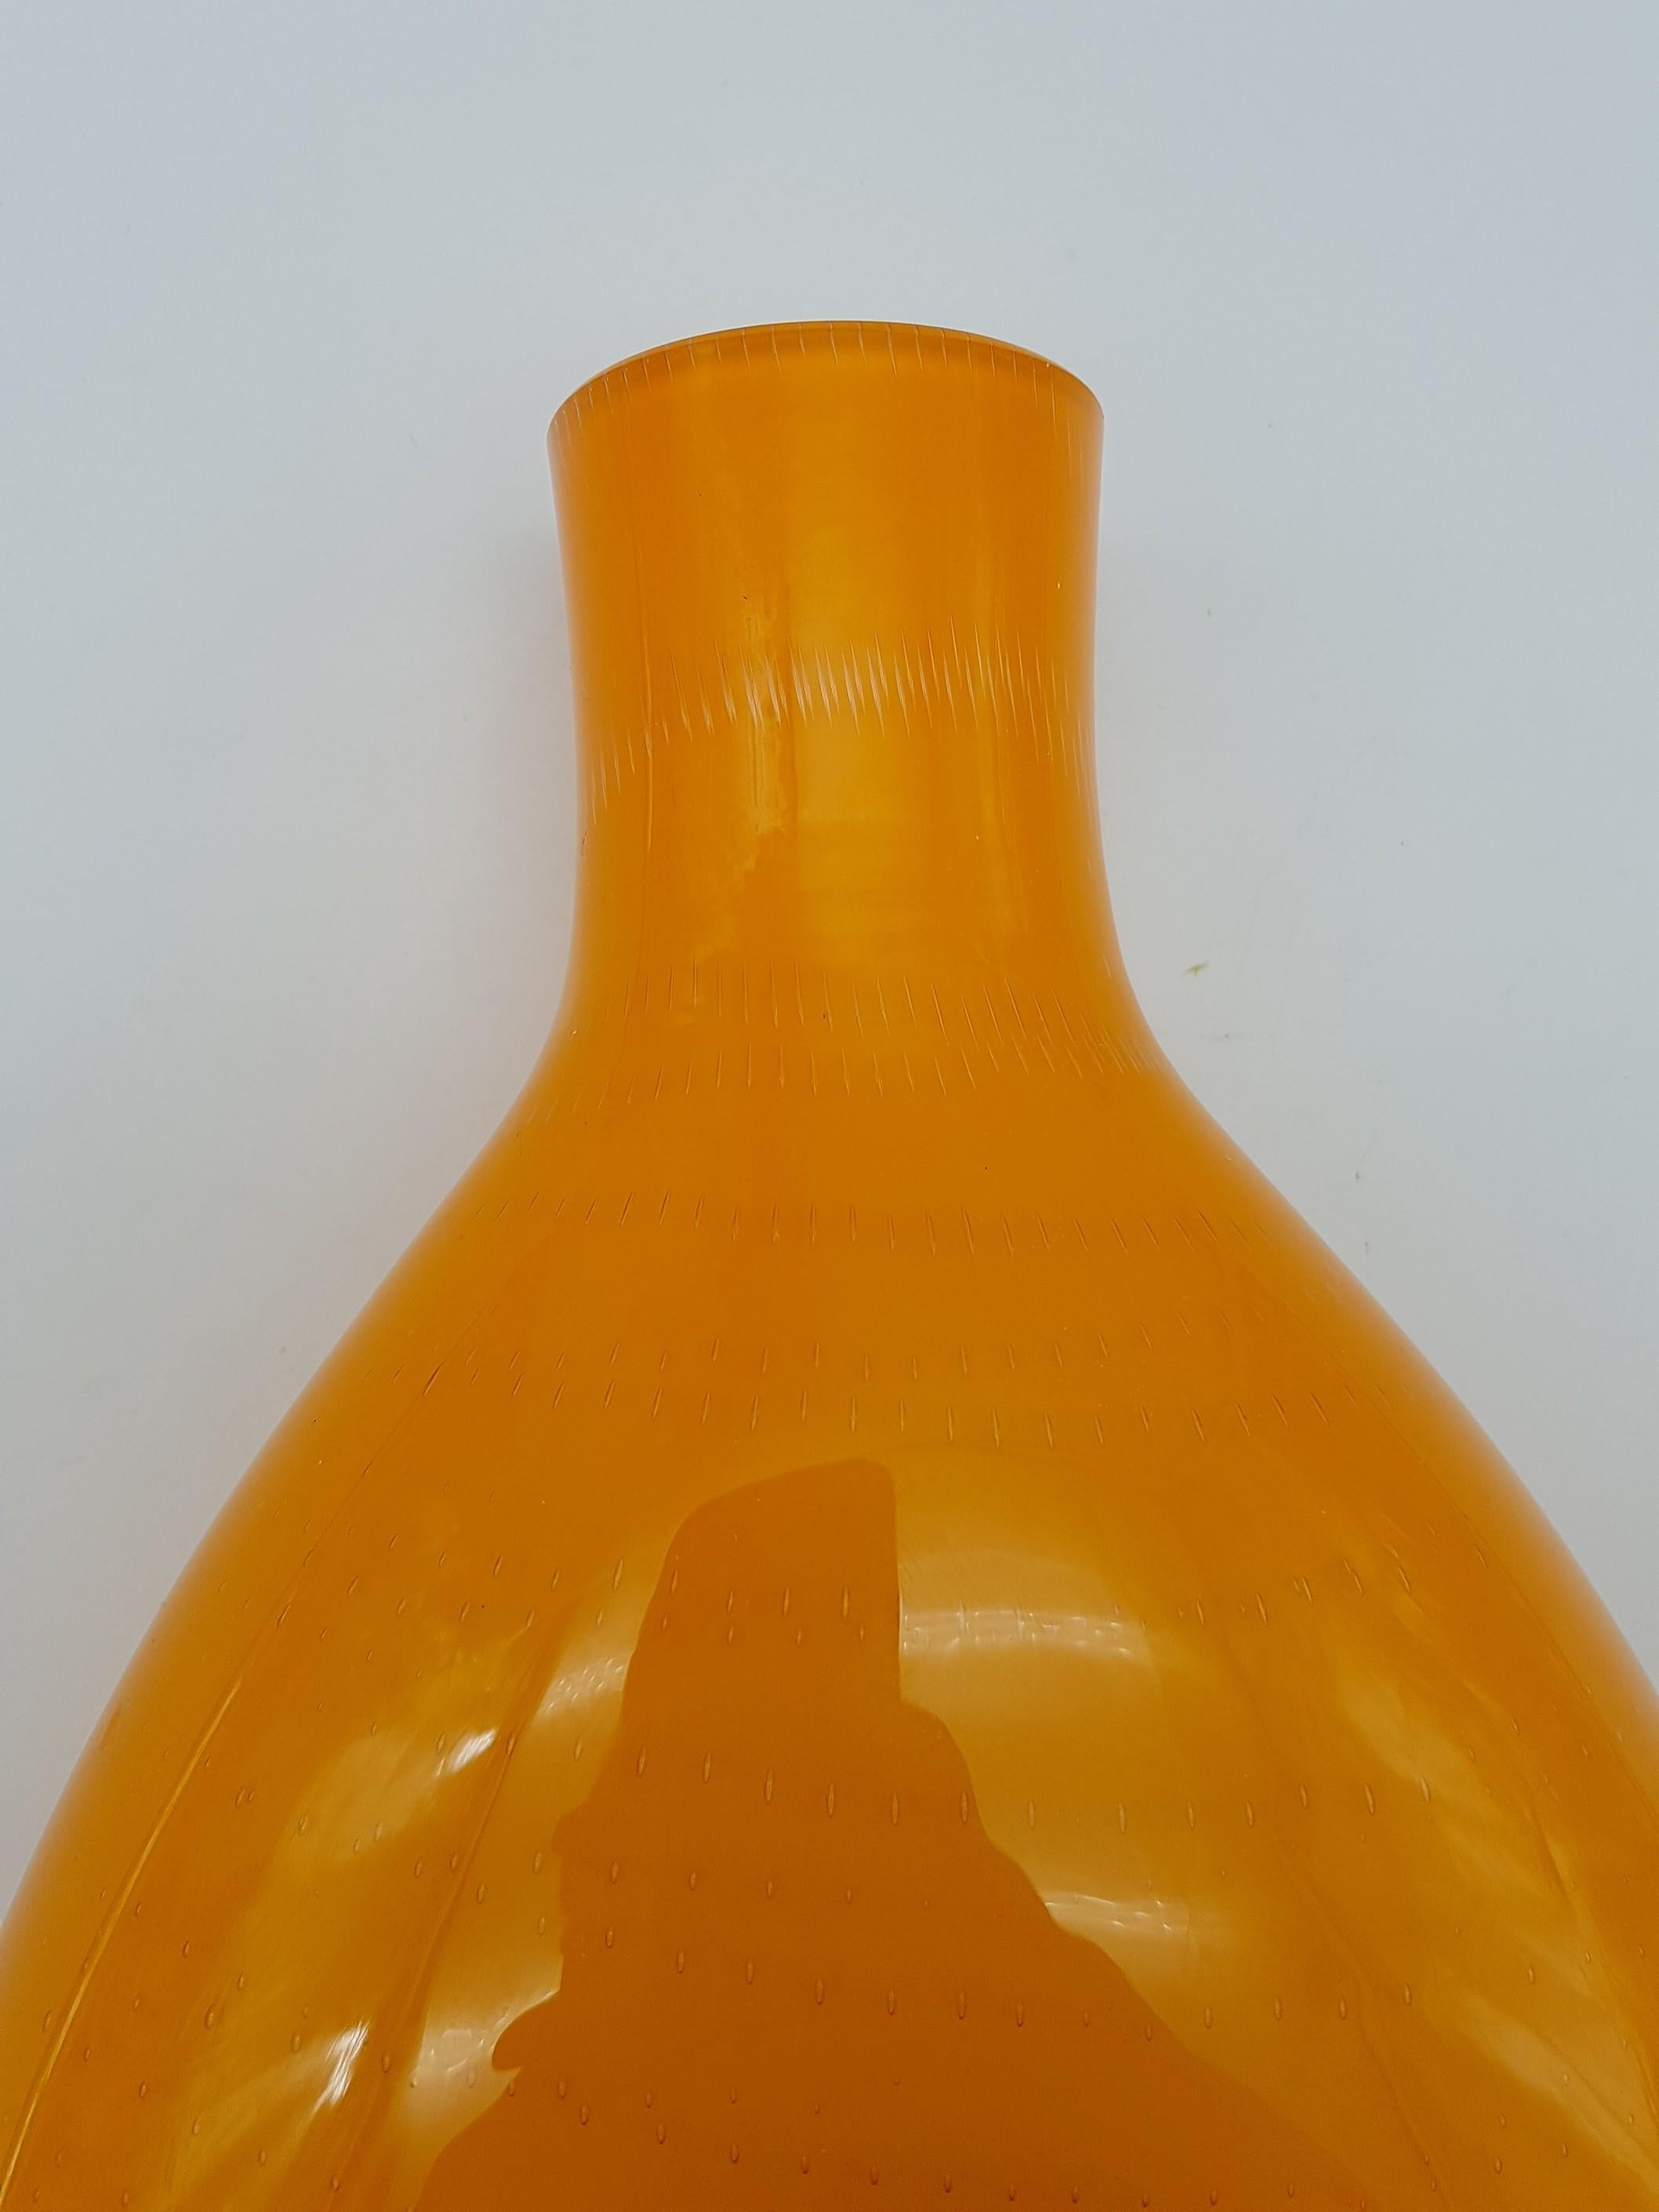 Hand-Crafted Modern Orange Incamiciato Murano Glass Vase by Gino Cenedese E Figlio, Late 1990 For Sale